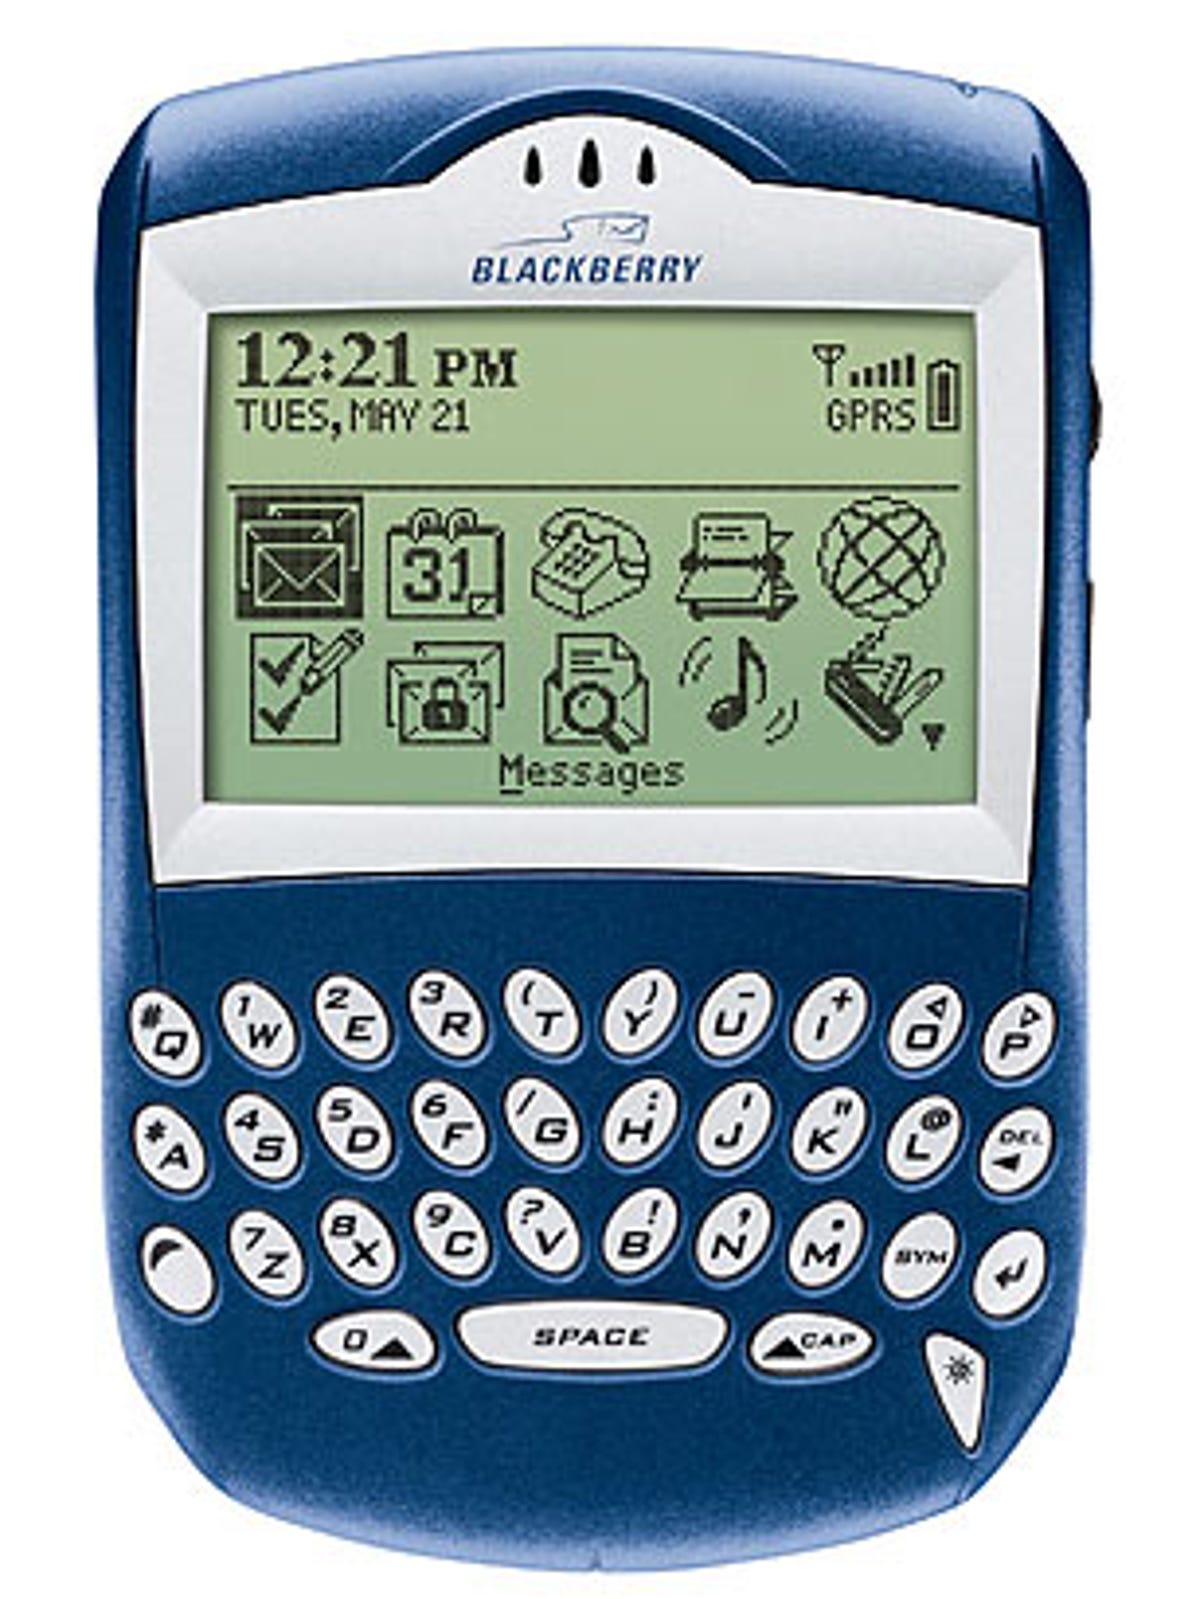 blackberry6210.jpg